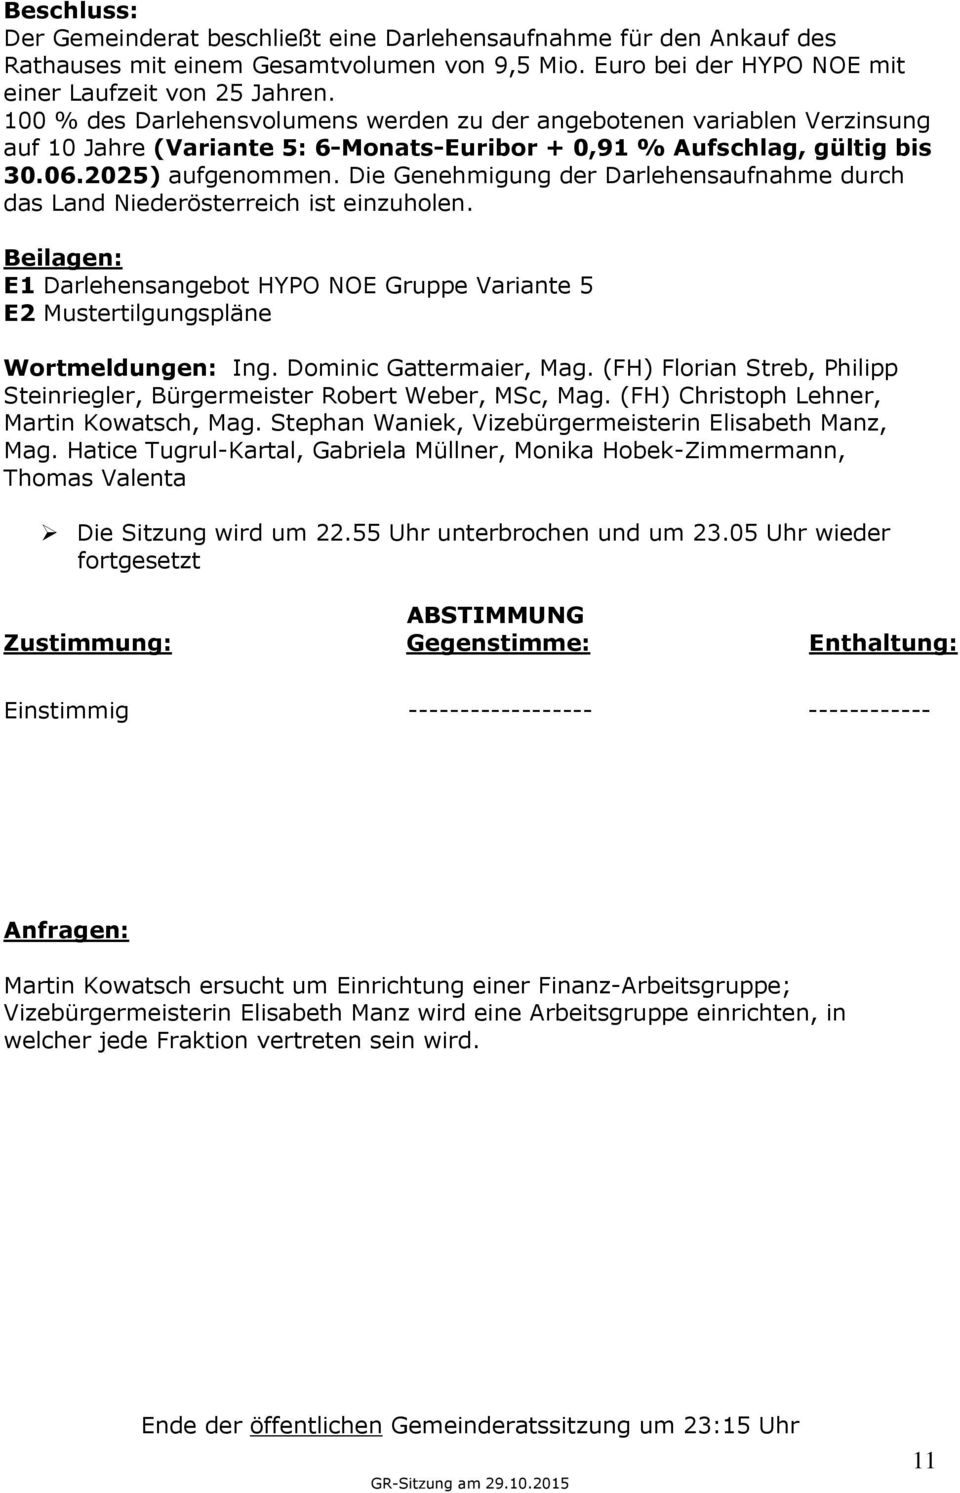 Die Genehmigung der Darlehensaufnahme durch das Land Niederösterreich ist einzuholen. Beilagen: E1 Darlehensangebot HYPO NOE Gruppe Variante 5 E2 Mustertilgungspläne Wortmeldungen: Ing.